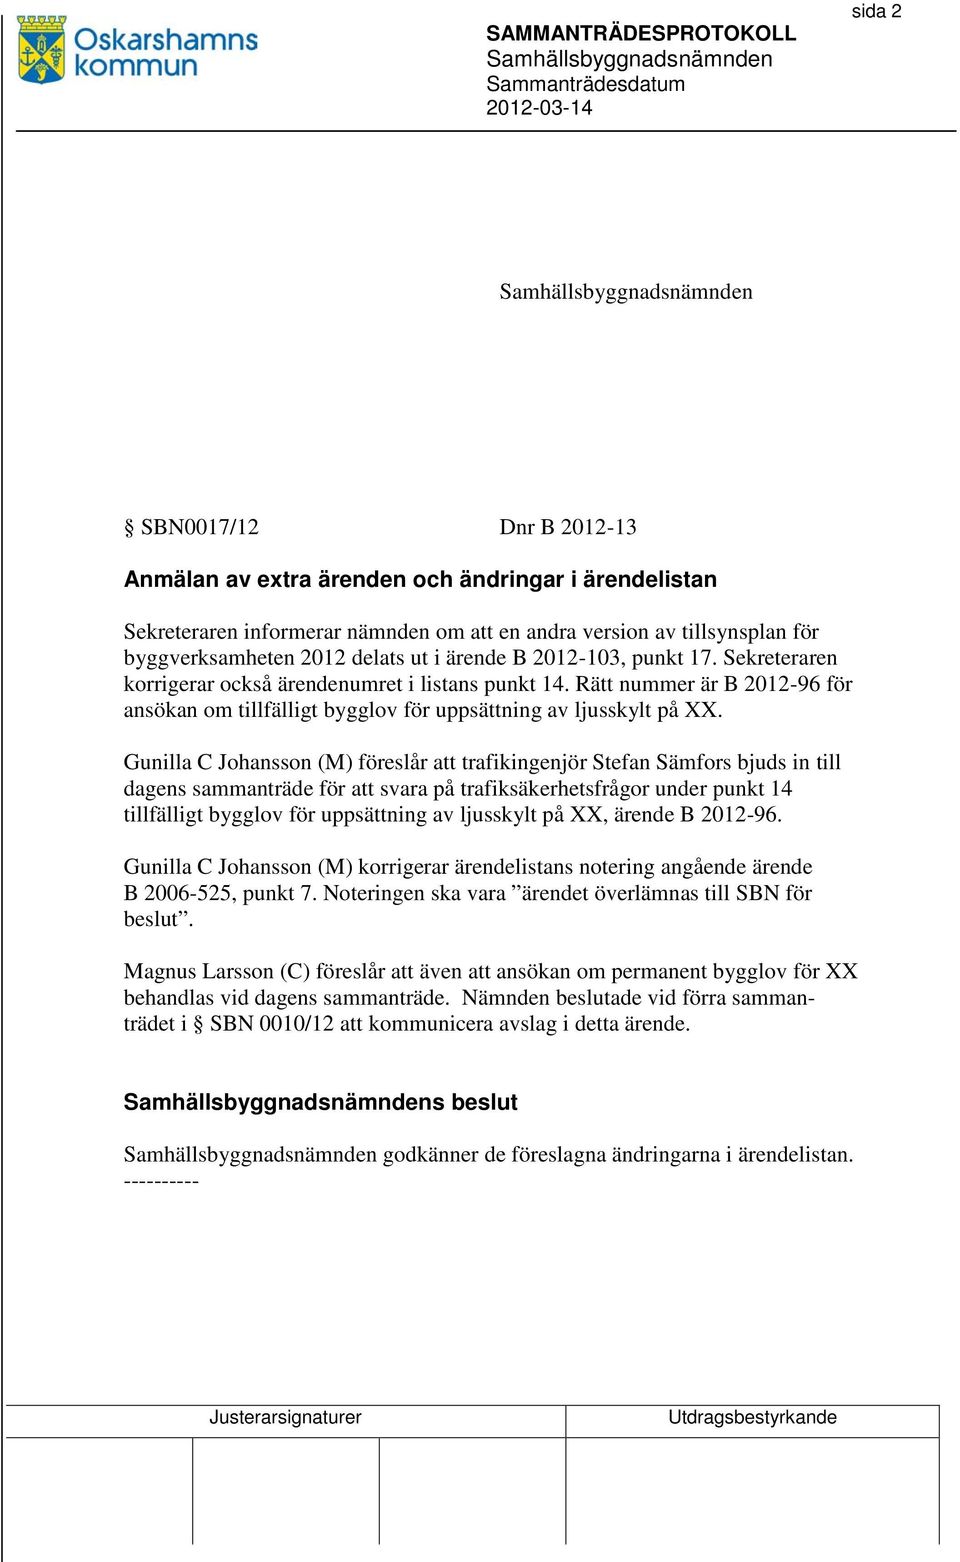 Gunilla C Johansson (M) föreslår att trafikingenjör Stefan Sämfors bjuds in till dagens sammanträde för att svara på trafiksäkerhetsfrågor under punkt 14 tillfälligt bygglov för uppsättning av